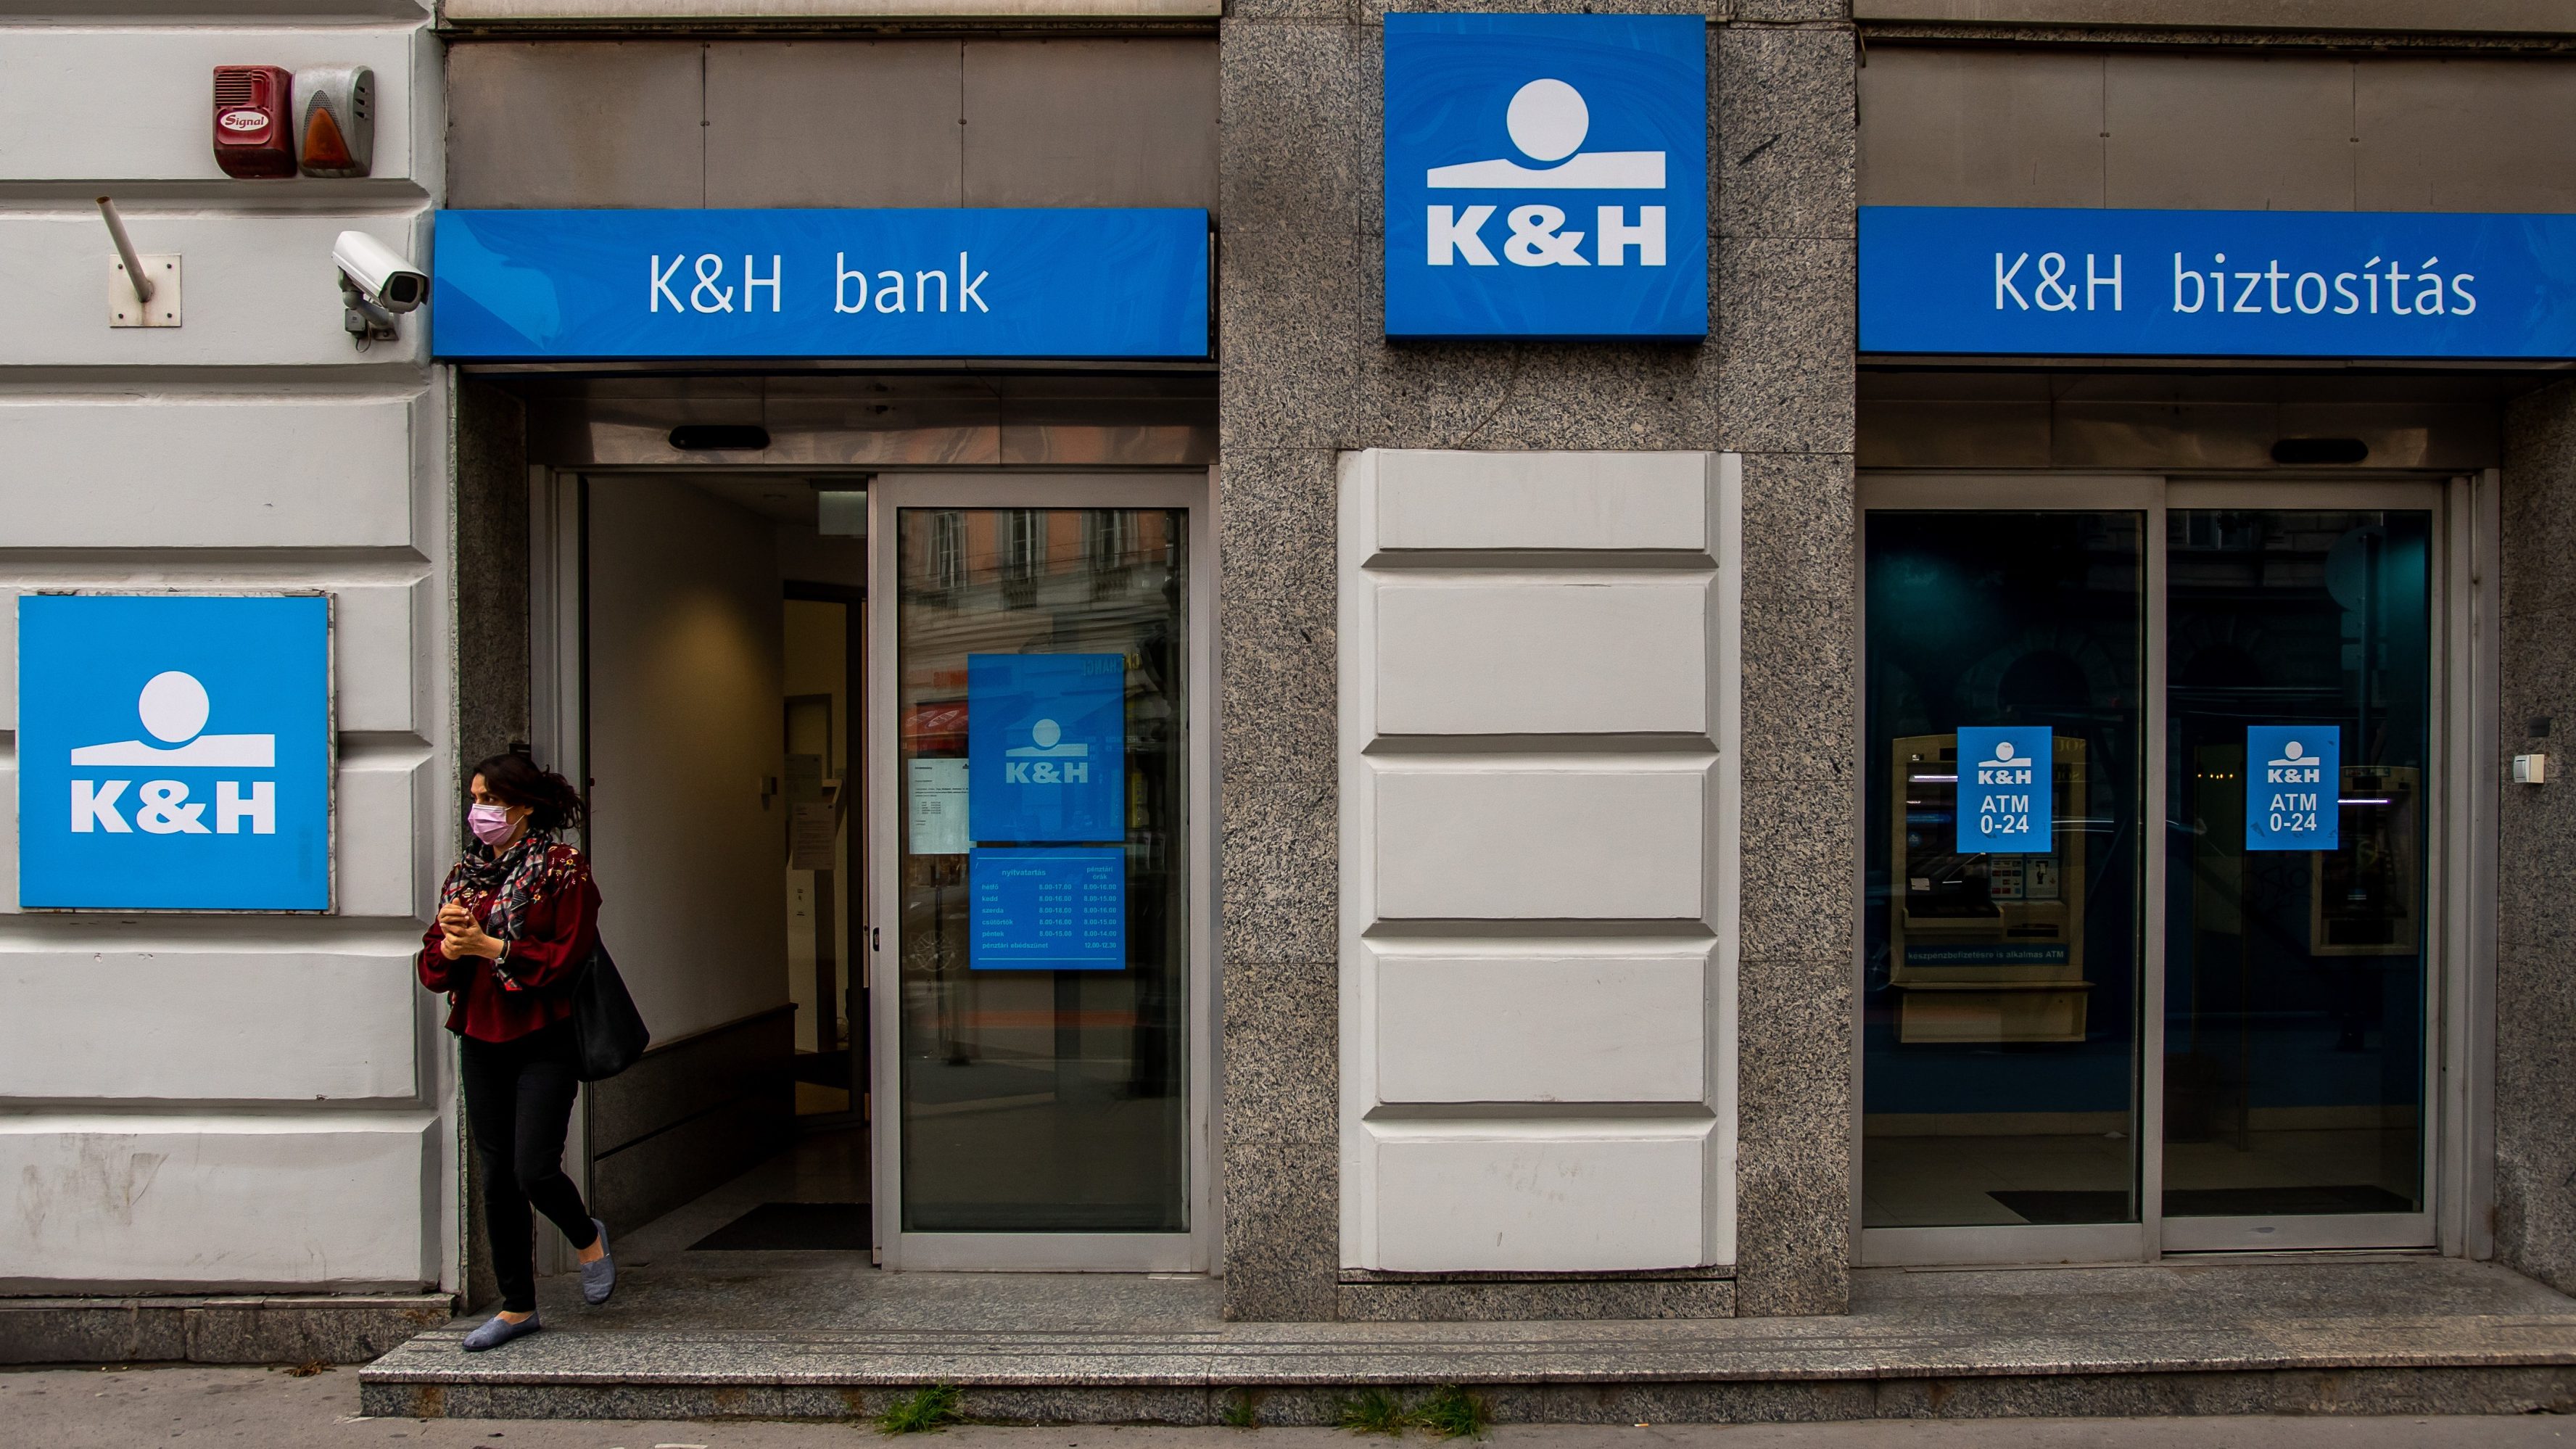 Akadozik az online fizetés a K&H-nál